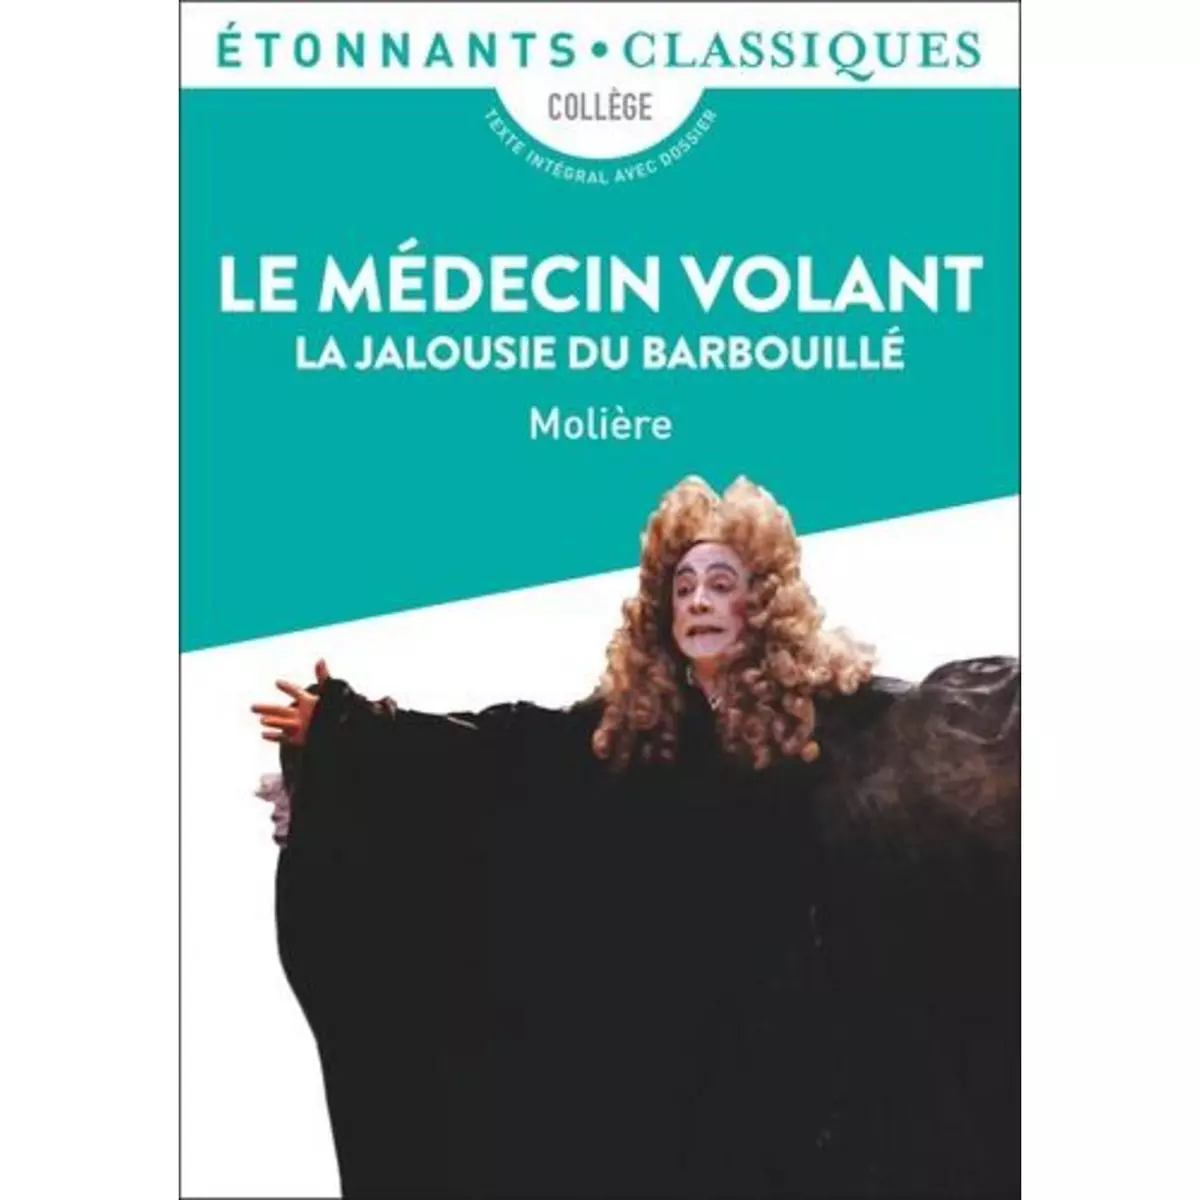  LE MEDECIN VOLANT ; LA JALOUSIE DU BARBOUILLE, Molière